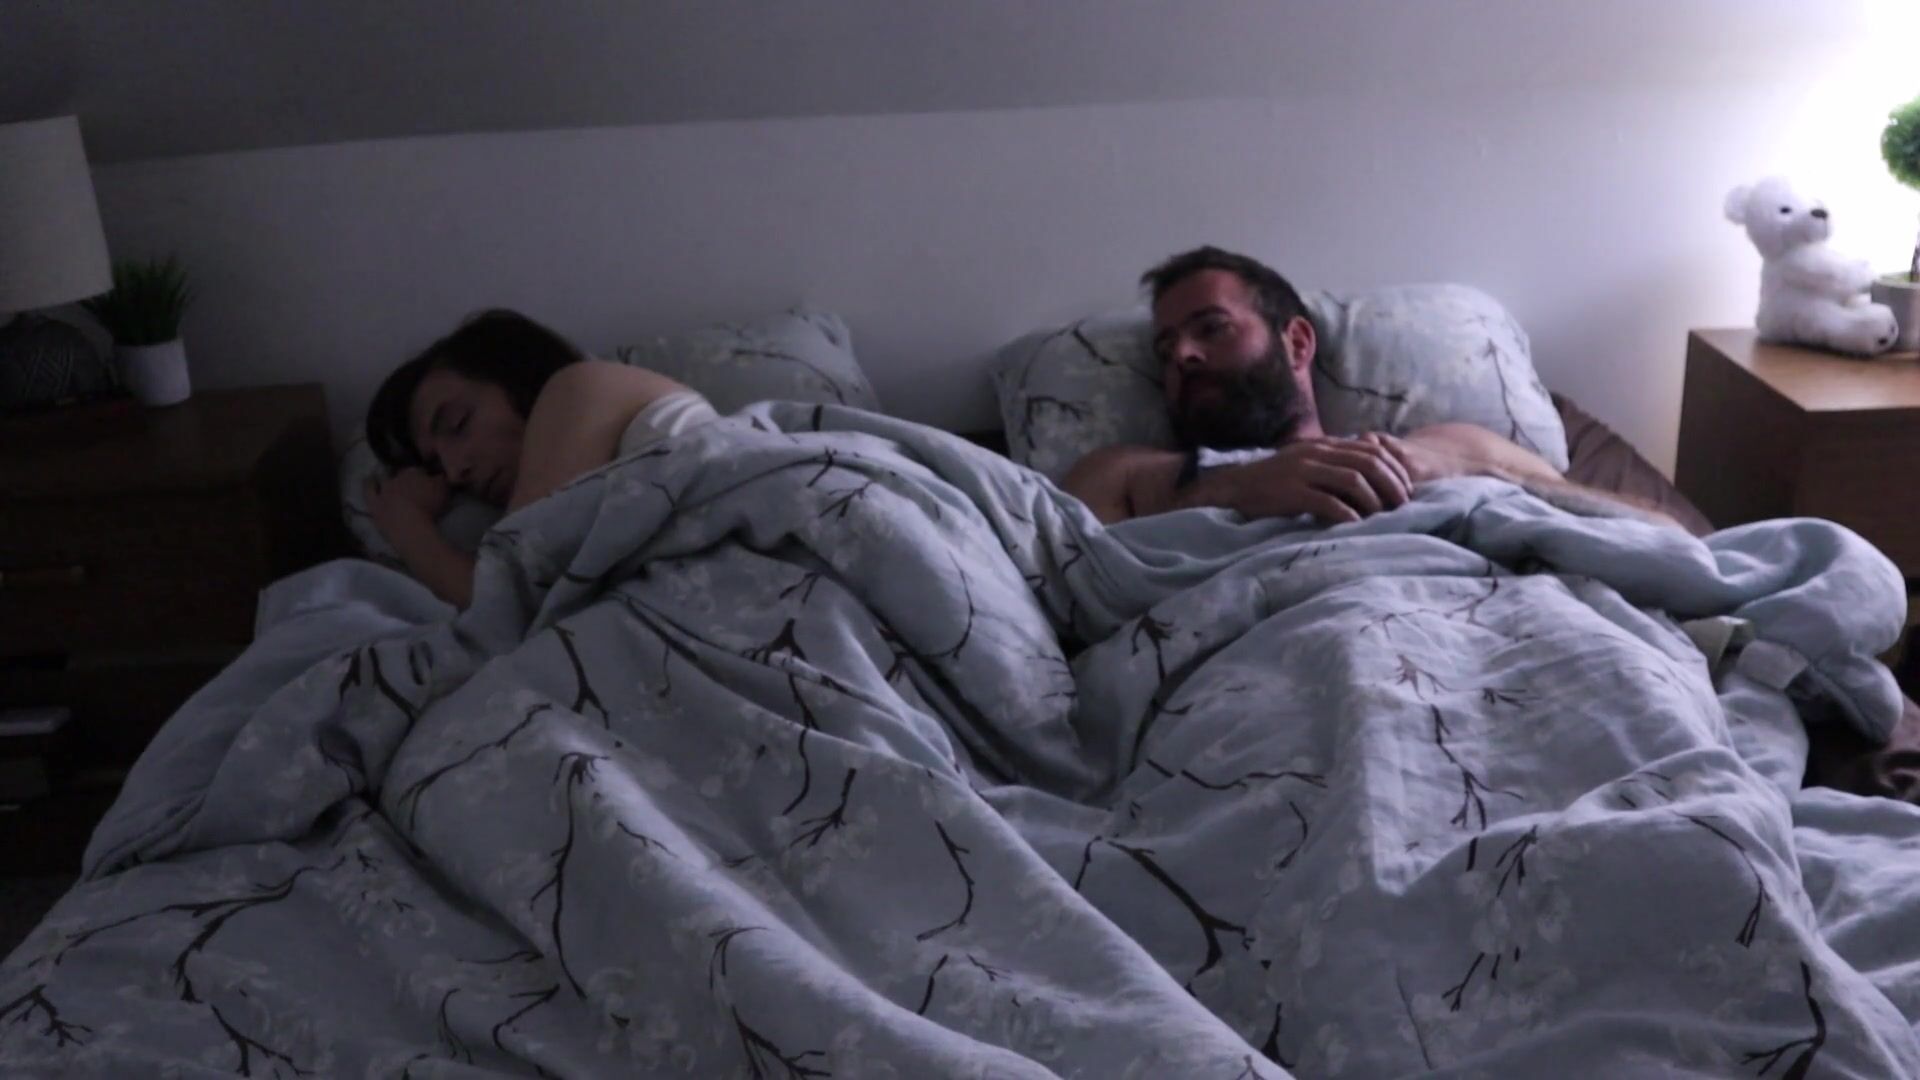 Поиск видео по запросу: Две пары в одной кровати